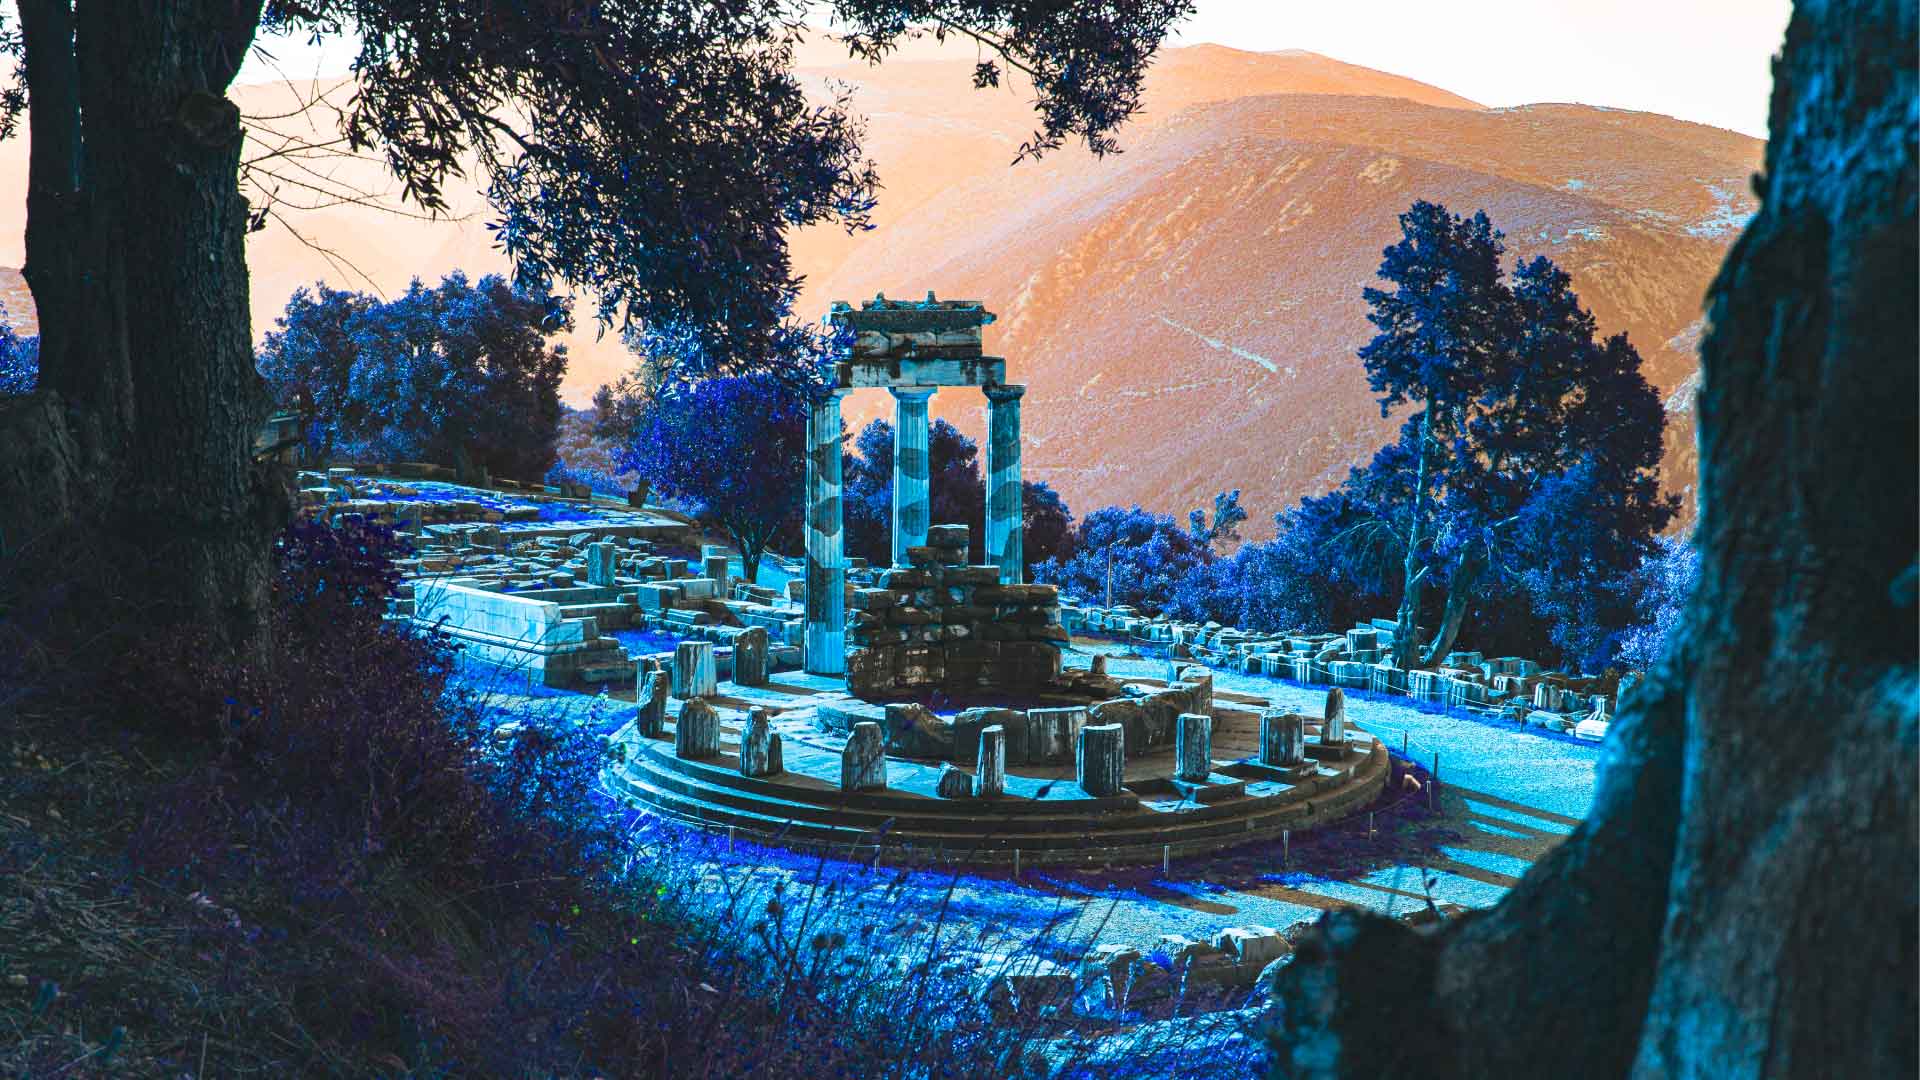 Η Θόλος στον Αρχαιολογικό χώρο των Δελφών